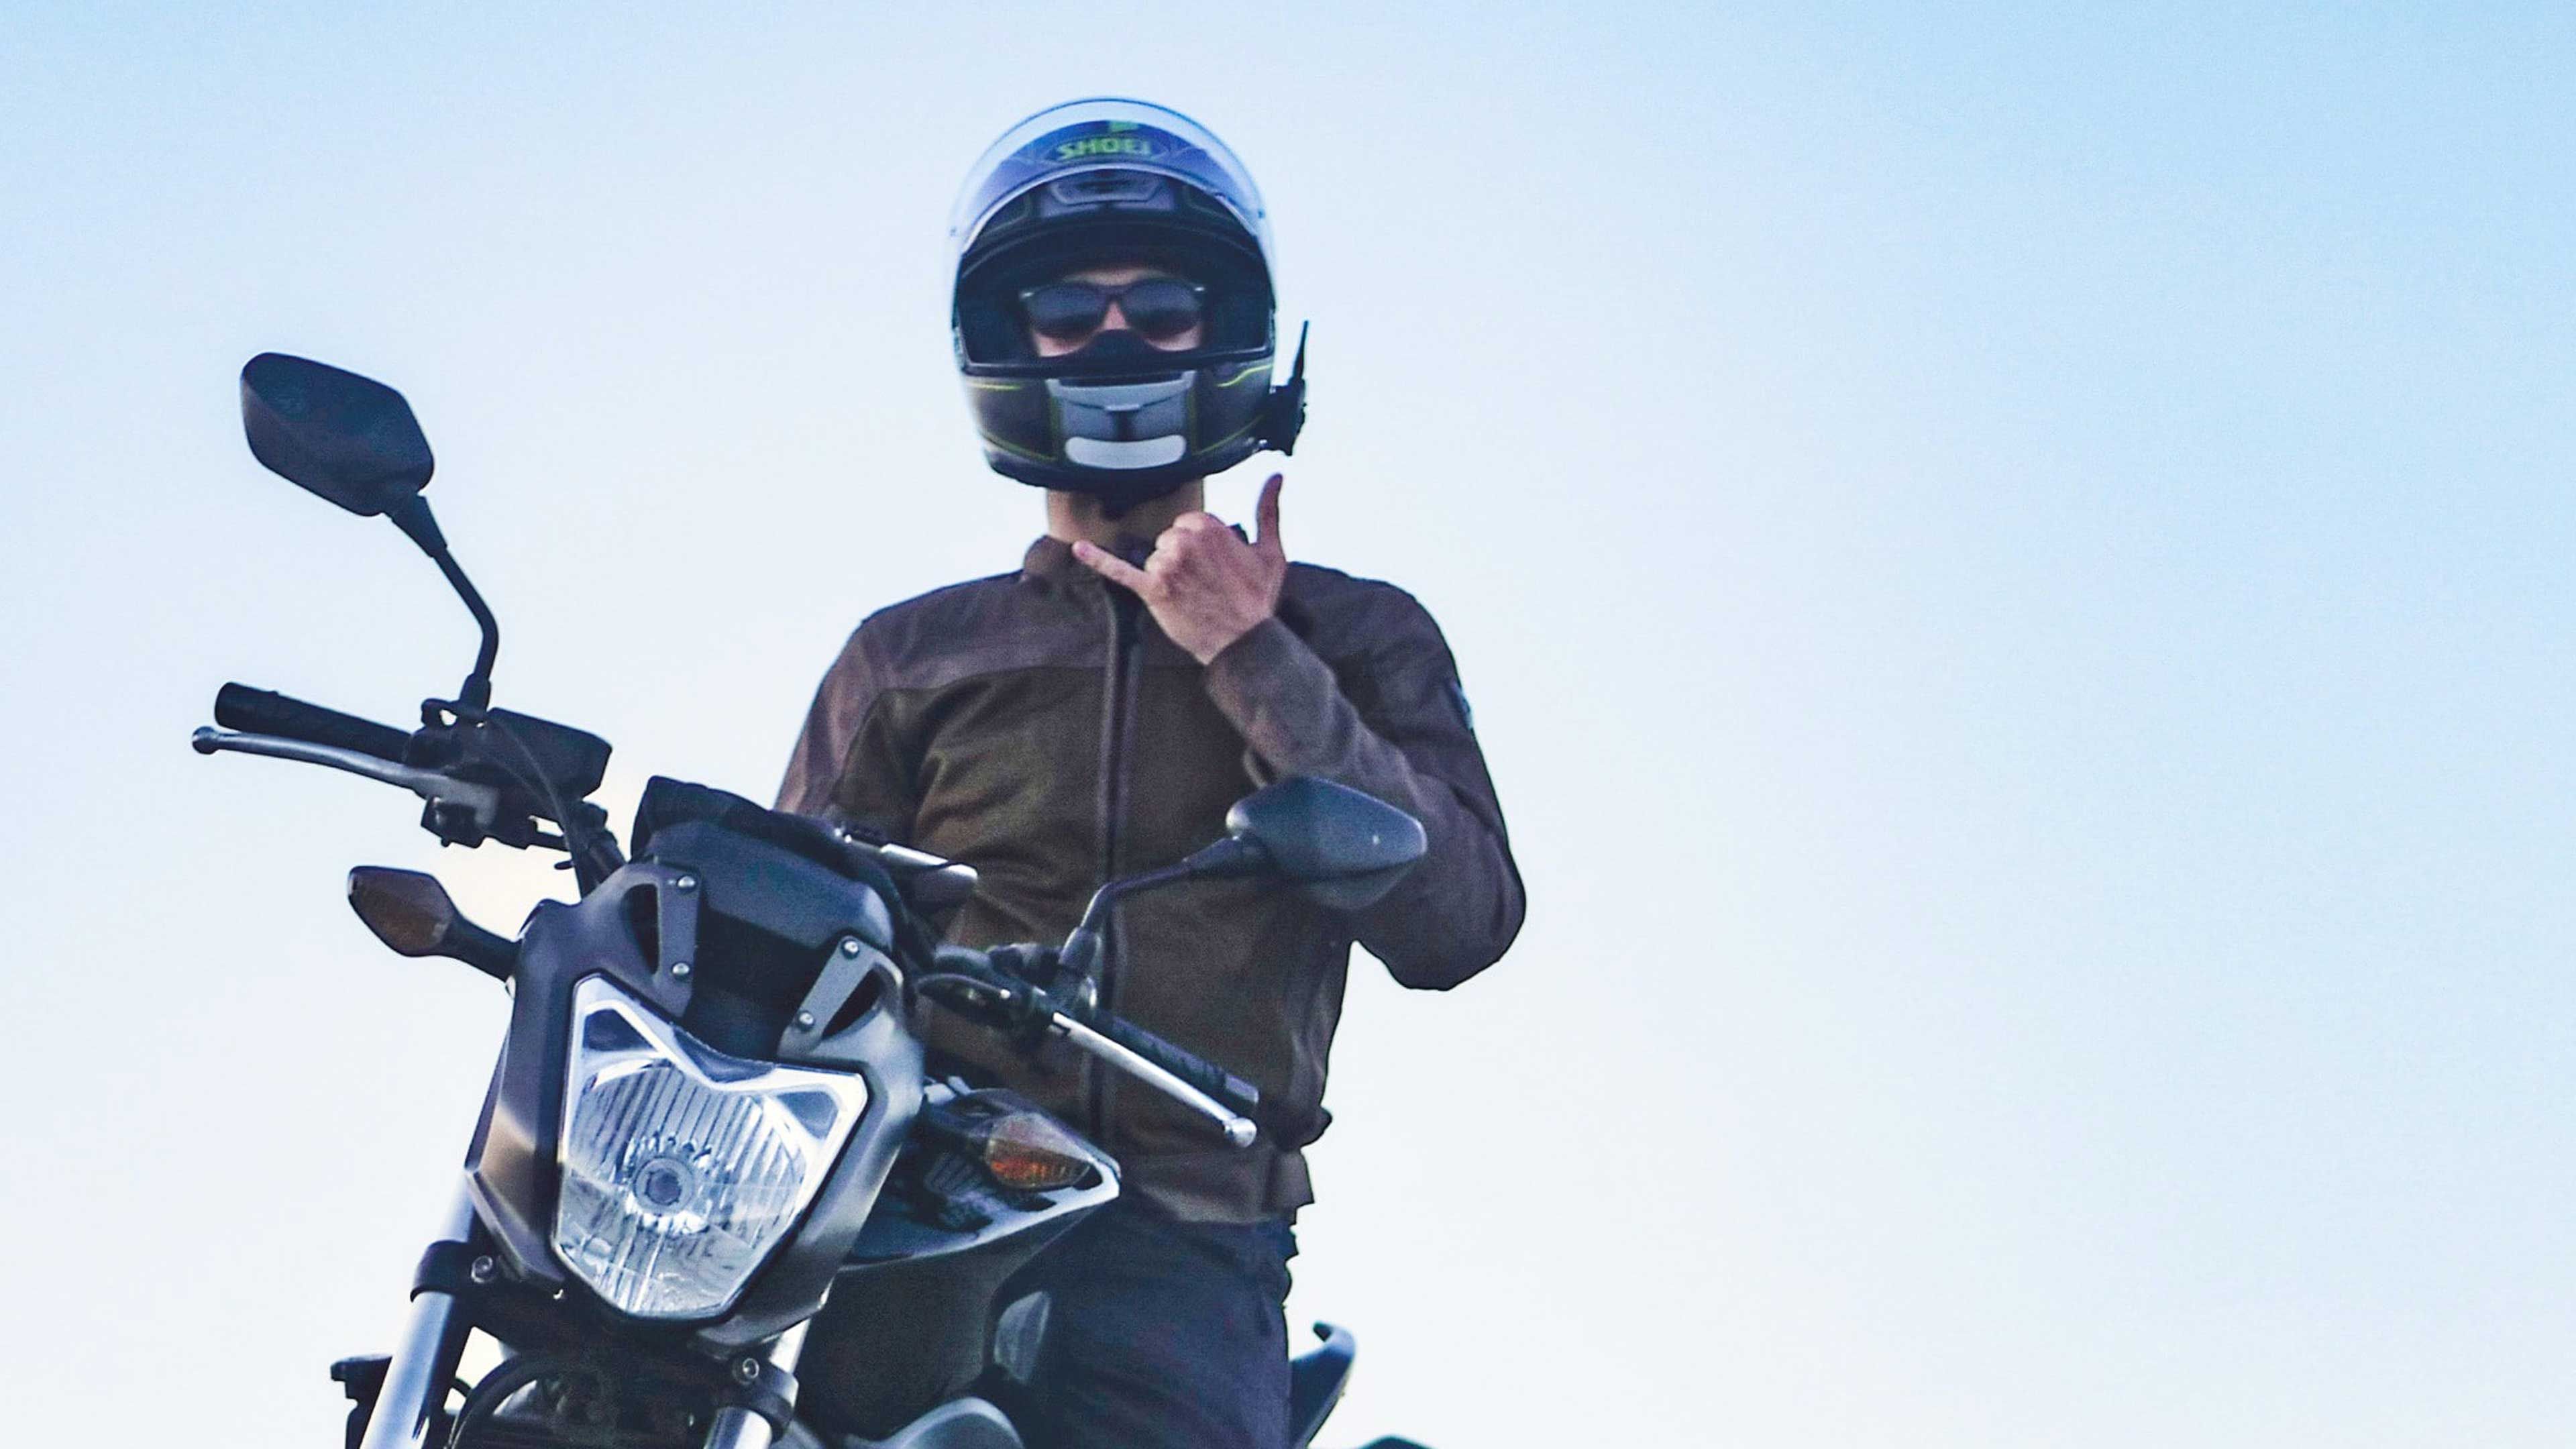 Liquidación en cascos de moto en Ebay: decenas de diseños primer nivel en oferta a precio de escándalo | Auto Bild España